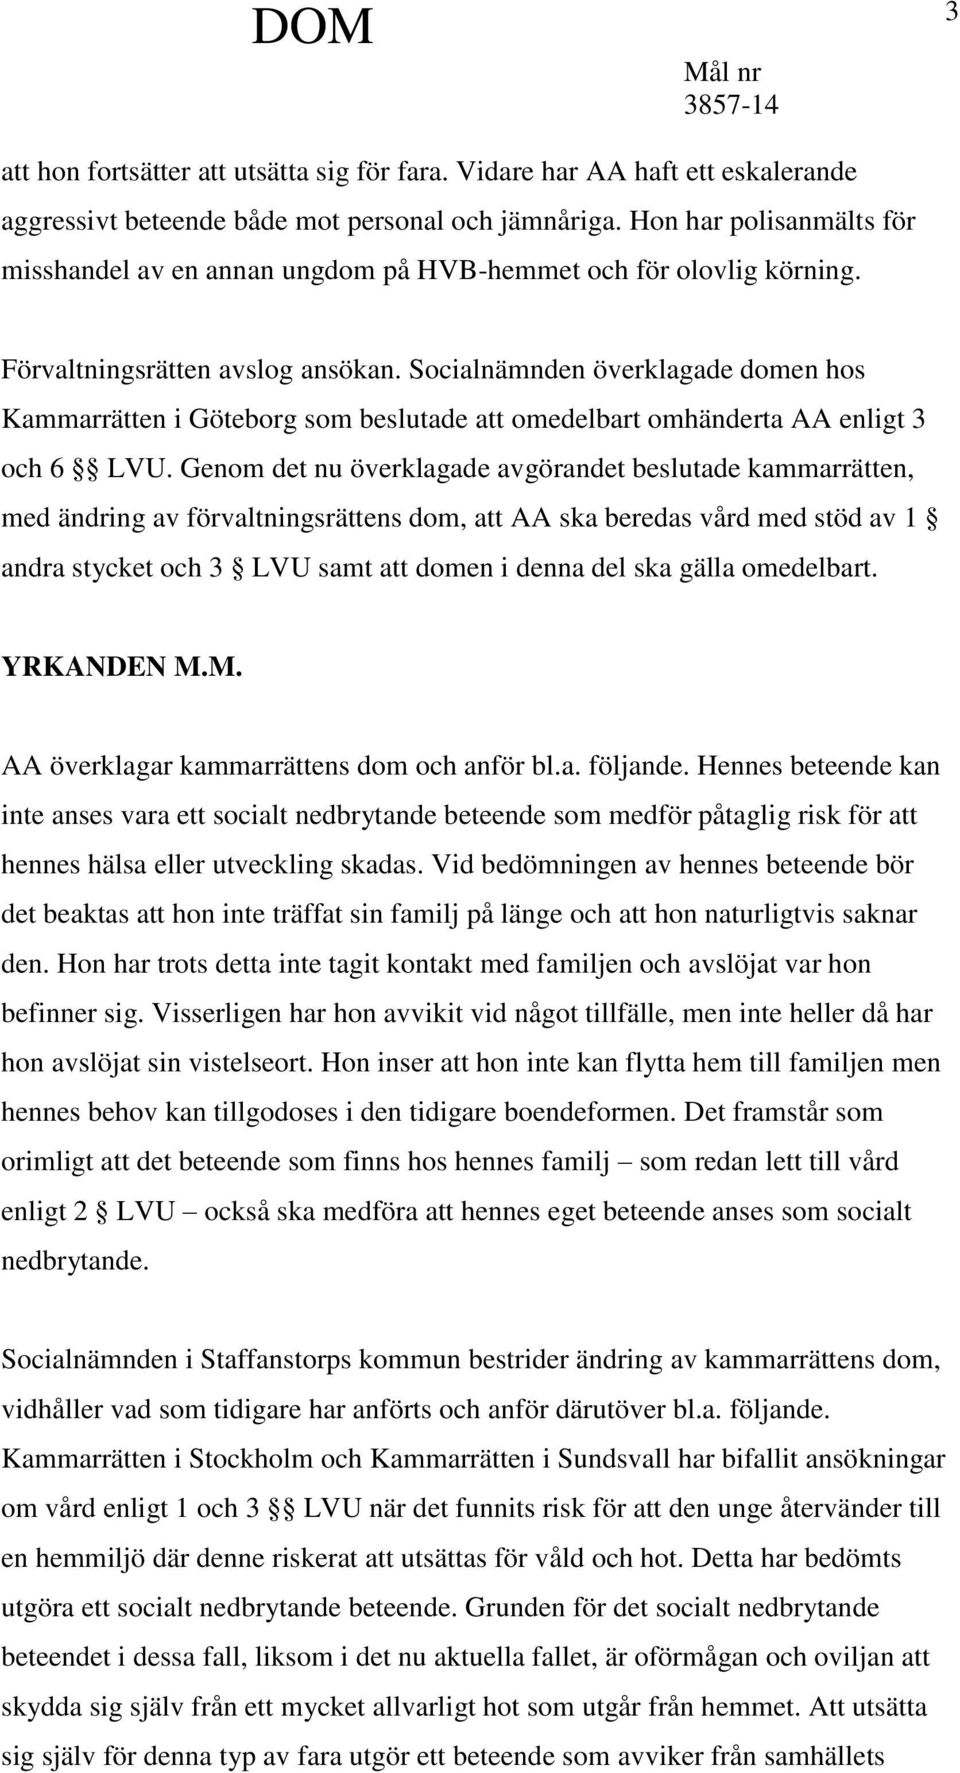 Socialnämnden överklagade domen hos Kammarrätten i Göteborg som beslutade att omedelbart omhänderta AA enligt 3 och 6 LVU.